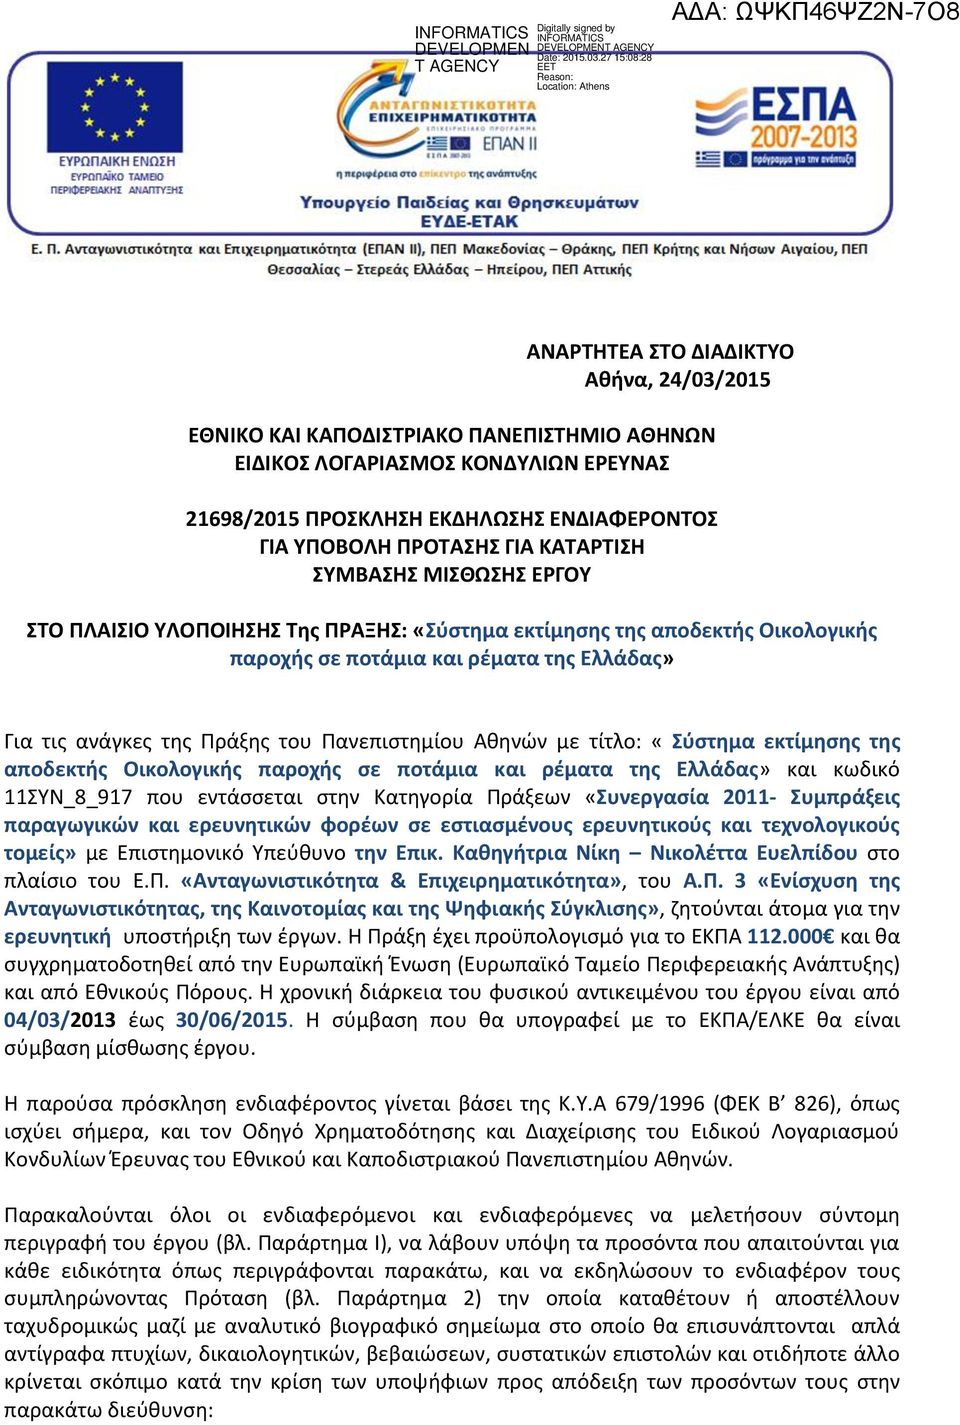 Πανεπιστημίου Αθηνών με τίτλο: «Σύστημα εκτίμησης της αποδεκτής Οικολογικής παροχής σε ποτάμια και ρέματα της Ελλάδας» και κωδικό 11ΣΥΝ_8_917 που εντα σσεται στην Κατηγορία Πρα ξεων «Συνεργασία 2011-